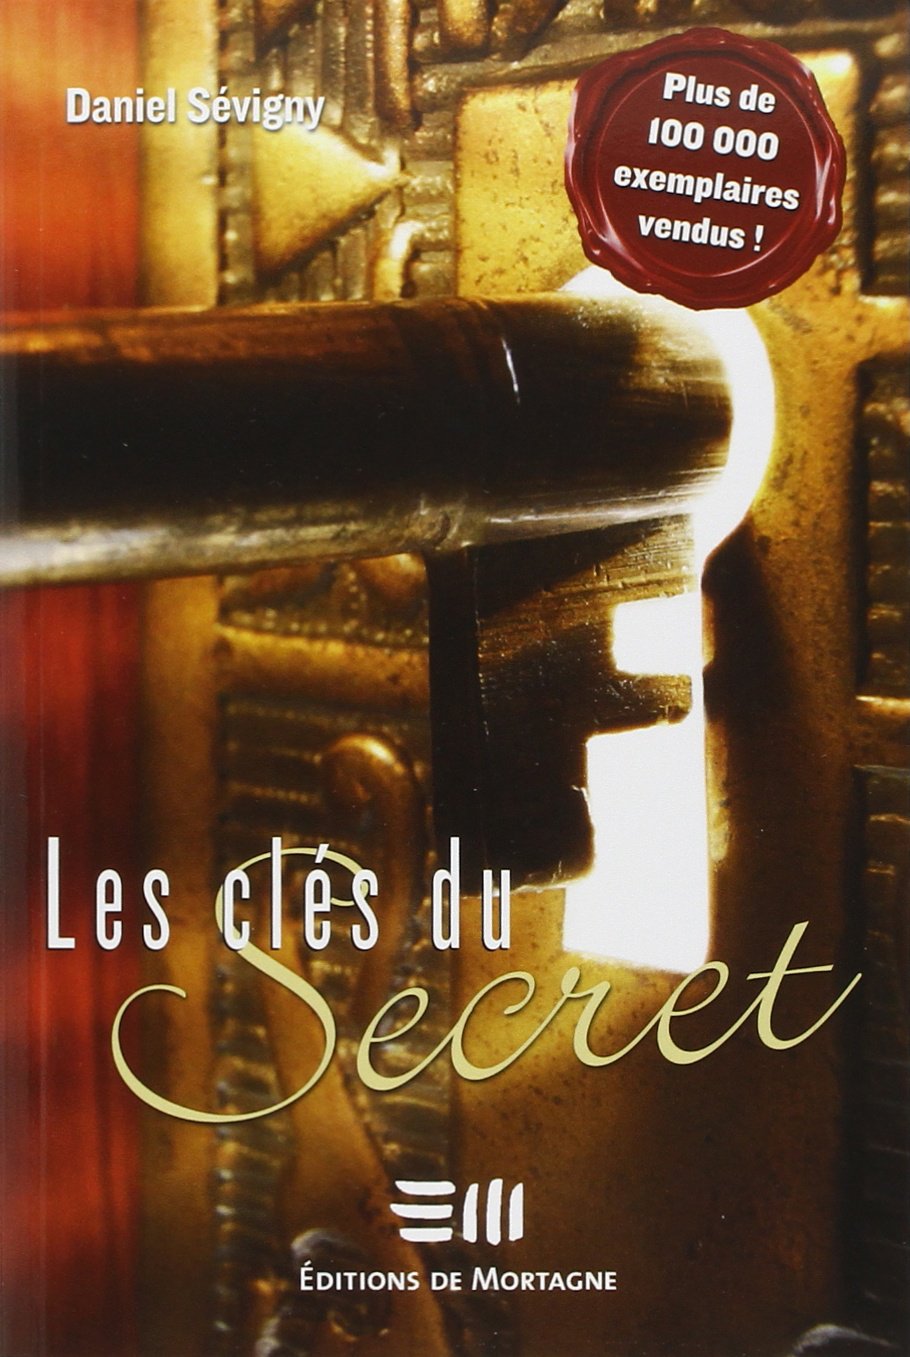 Livre ISBN 2890747409 Les clés du Secret (Daniel Sévigny)